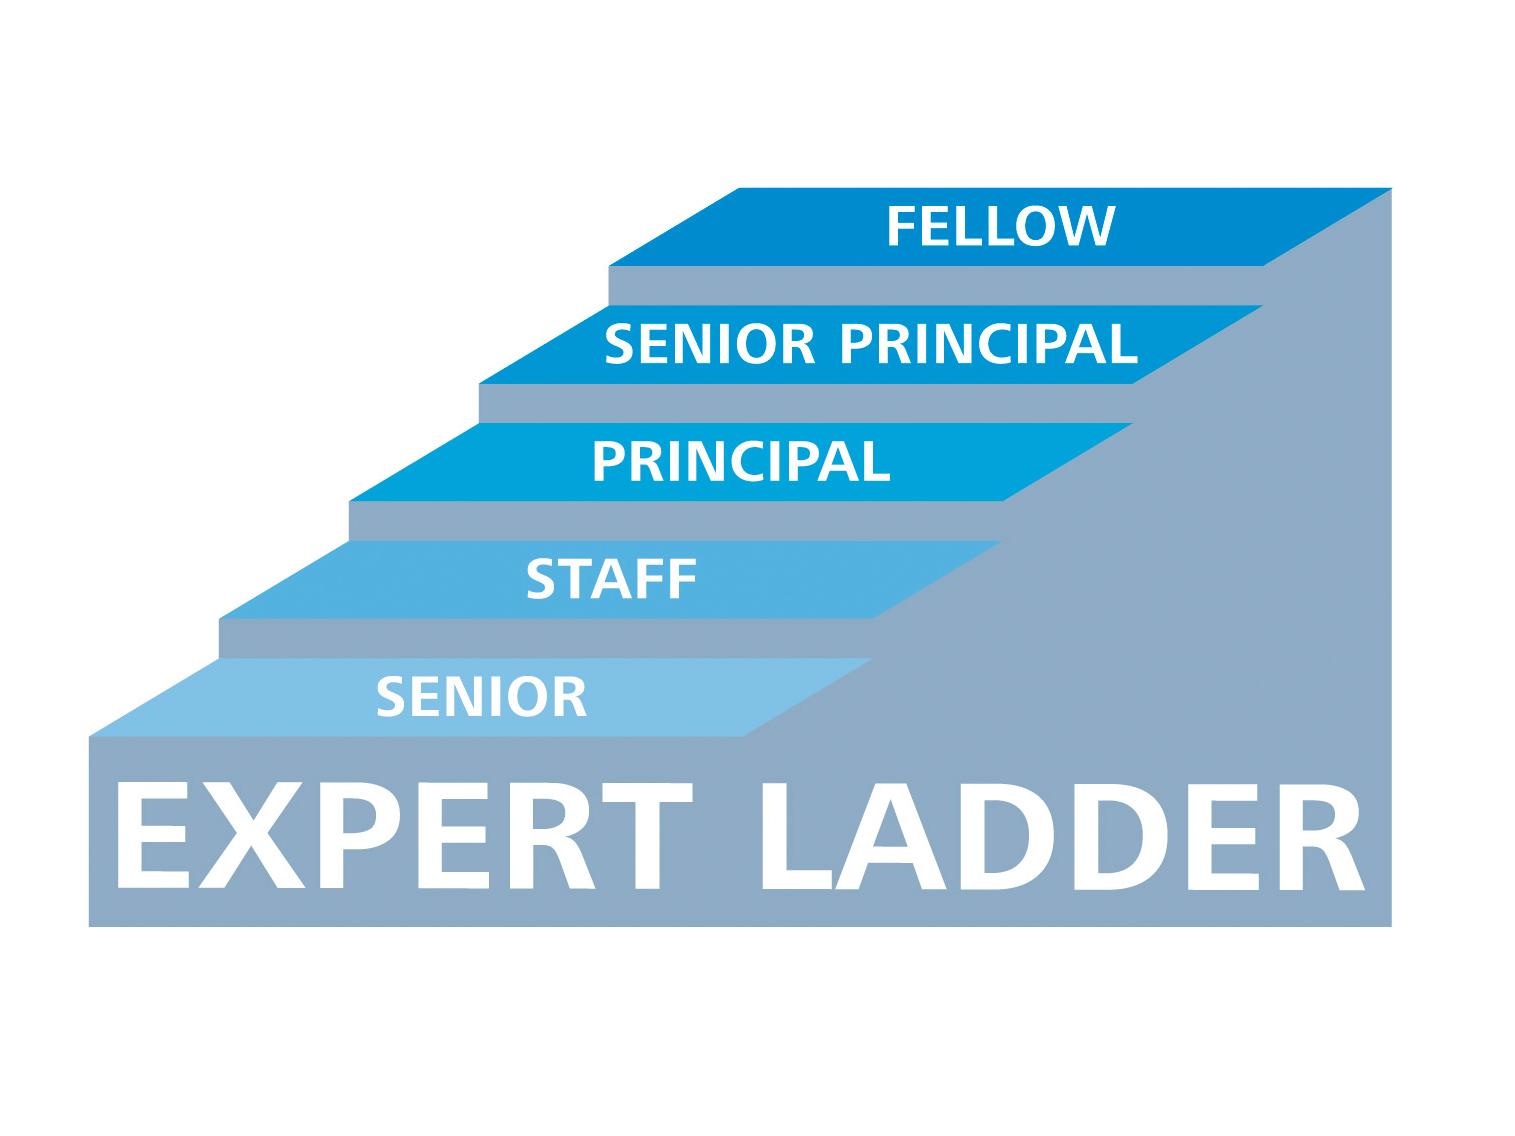 Grafische Aufbereitung der einzelnen Stufen der Fachlaufbahn von Senior bis Fellow